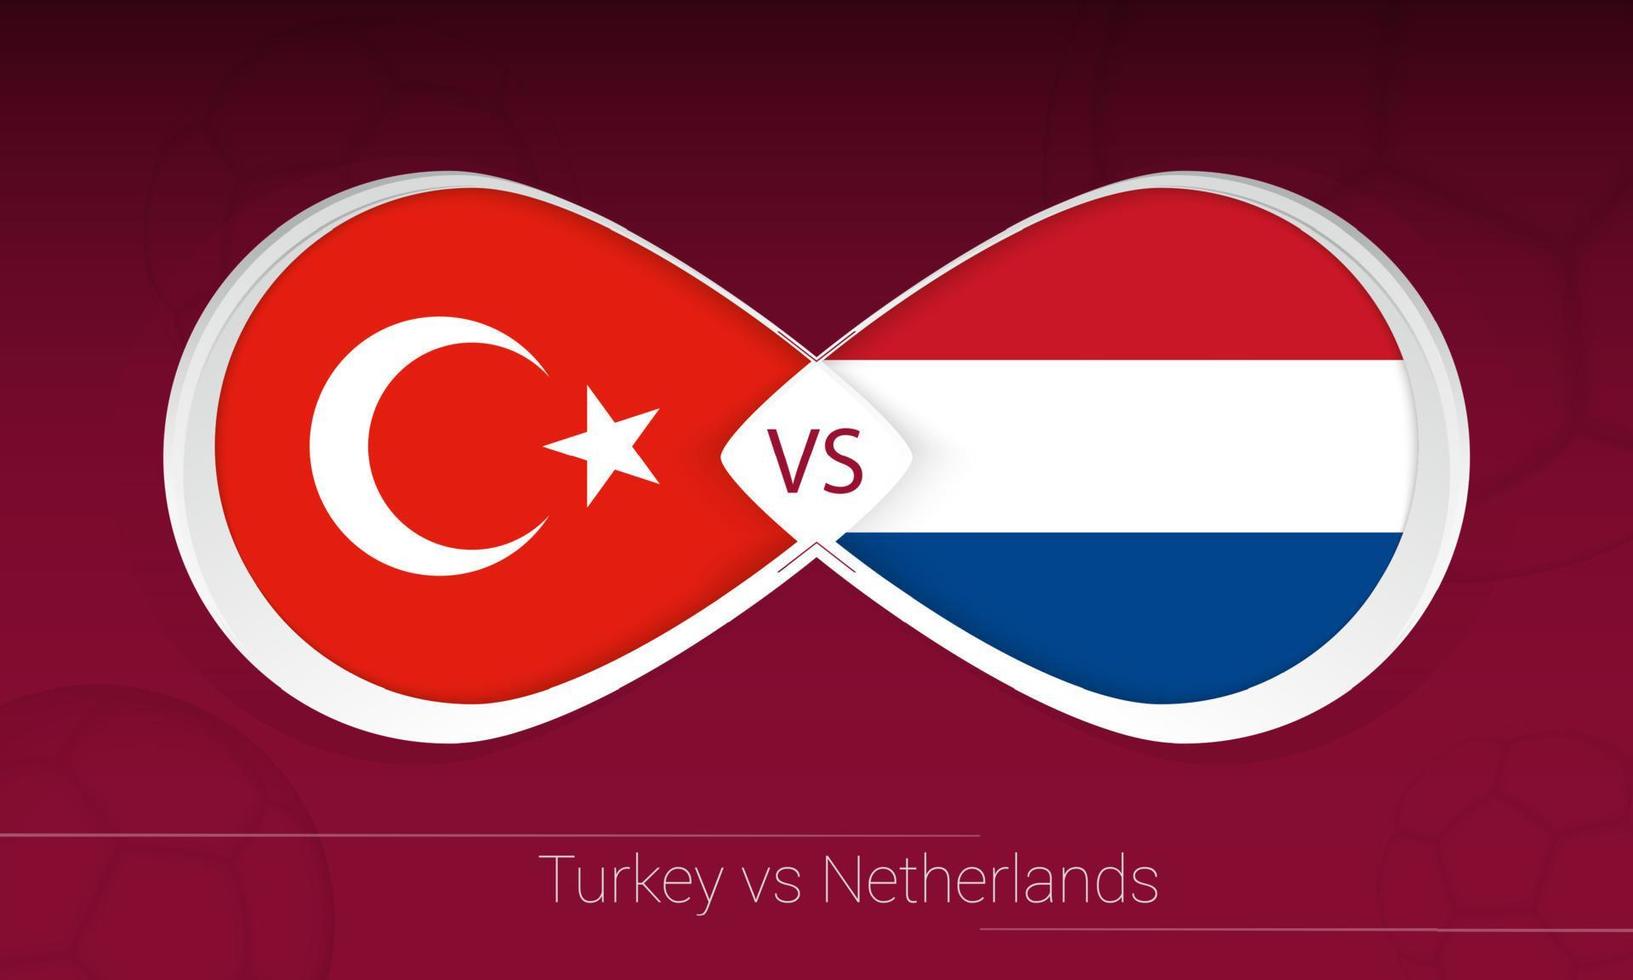 Turchia vs Paesi Bassi nella competizione calcistica, girone g. contro l'icona sullo sfondo del calcio. vettore